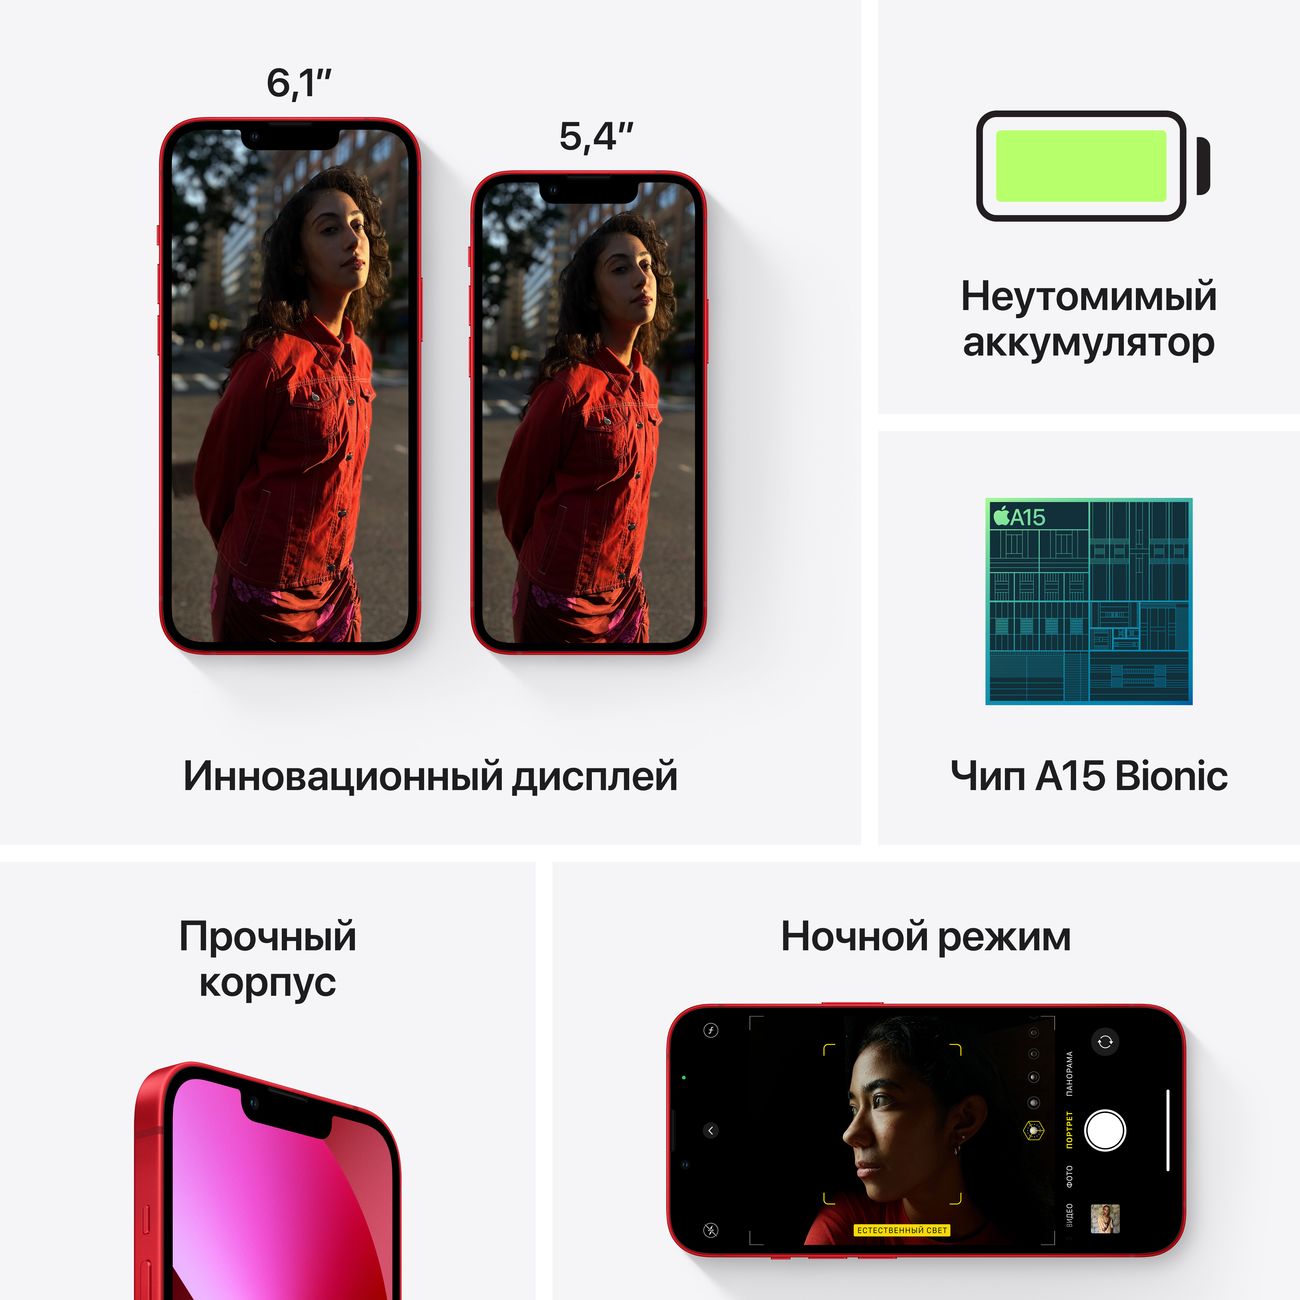 Купить смартфон apple iphone 13 mini 512gb pink Apple iPhone 13 mini в официальном магазине Apple, Samsung, Xiaomi. iPixel.ru Купить, заказ, кредит, рассрочка, отзывы,  характеристики, цена,  фотографии, в подарок.